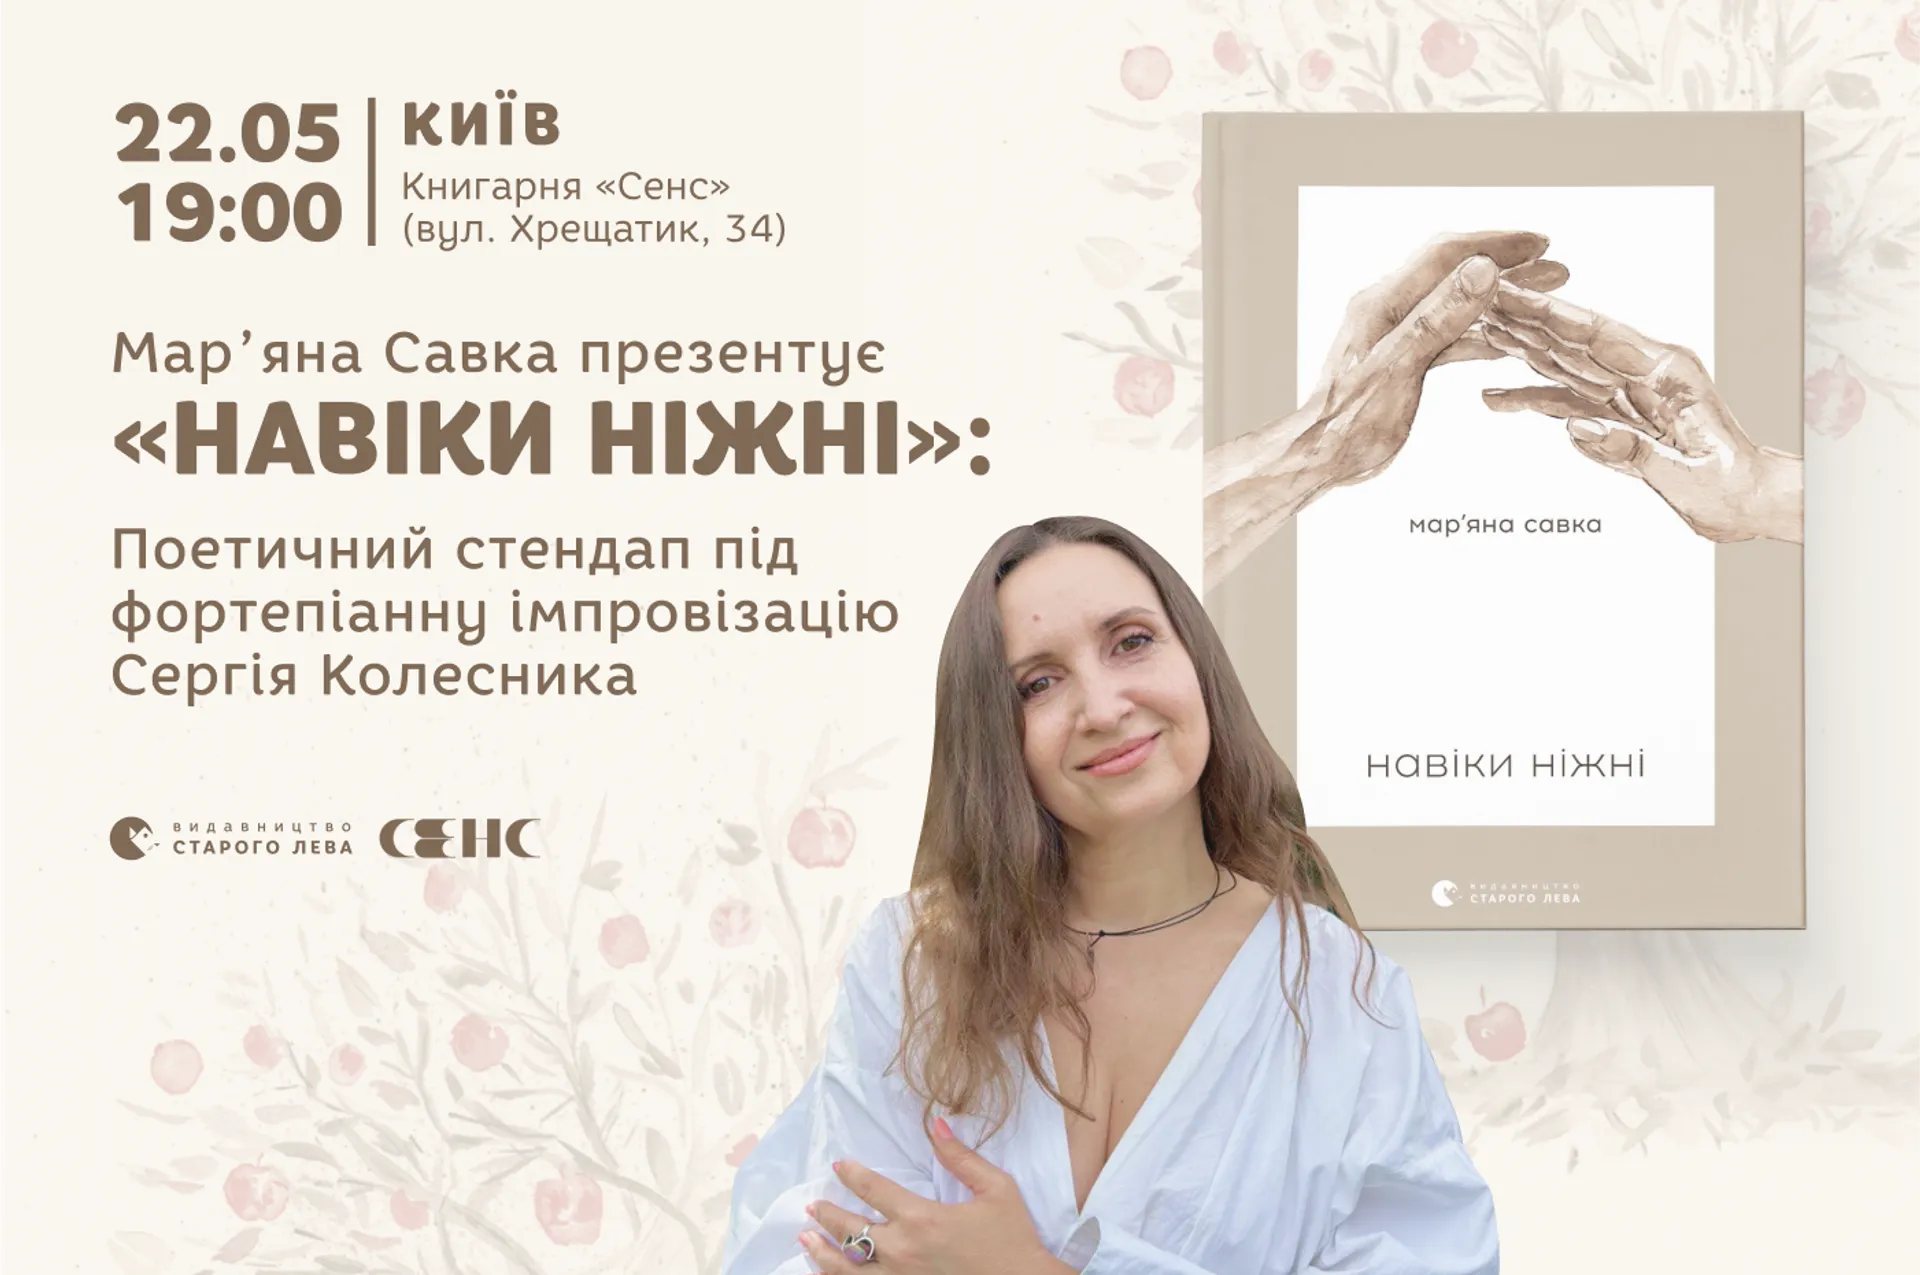 Марʼяна Савка презентує «Навіки ніжні». Поетичний стендап під фортепіанну імпровізацію Сергія Колесника.